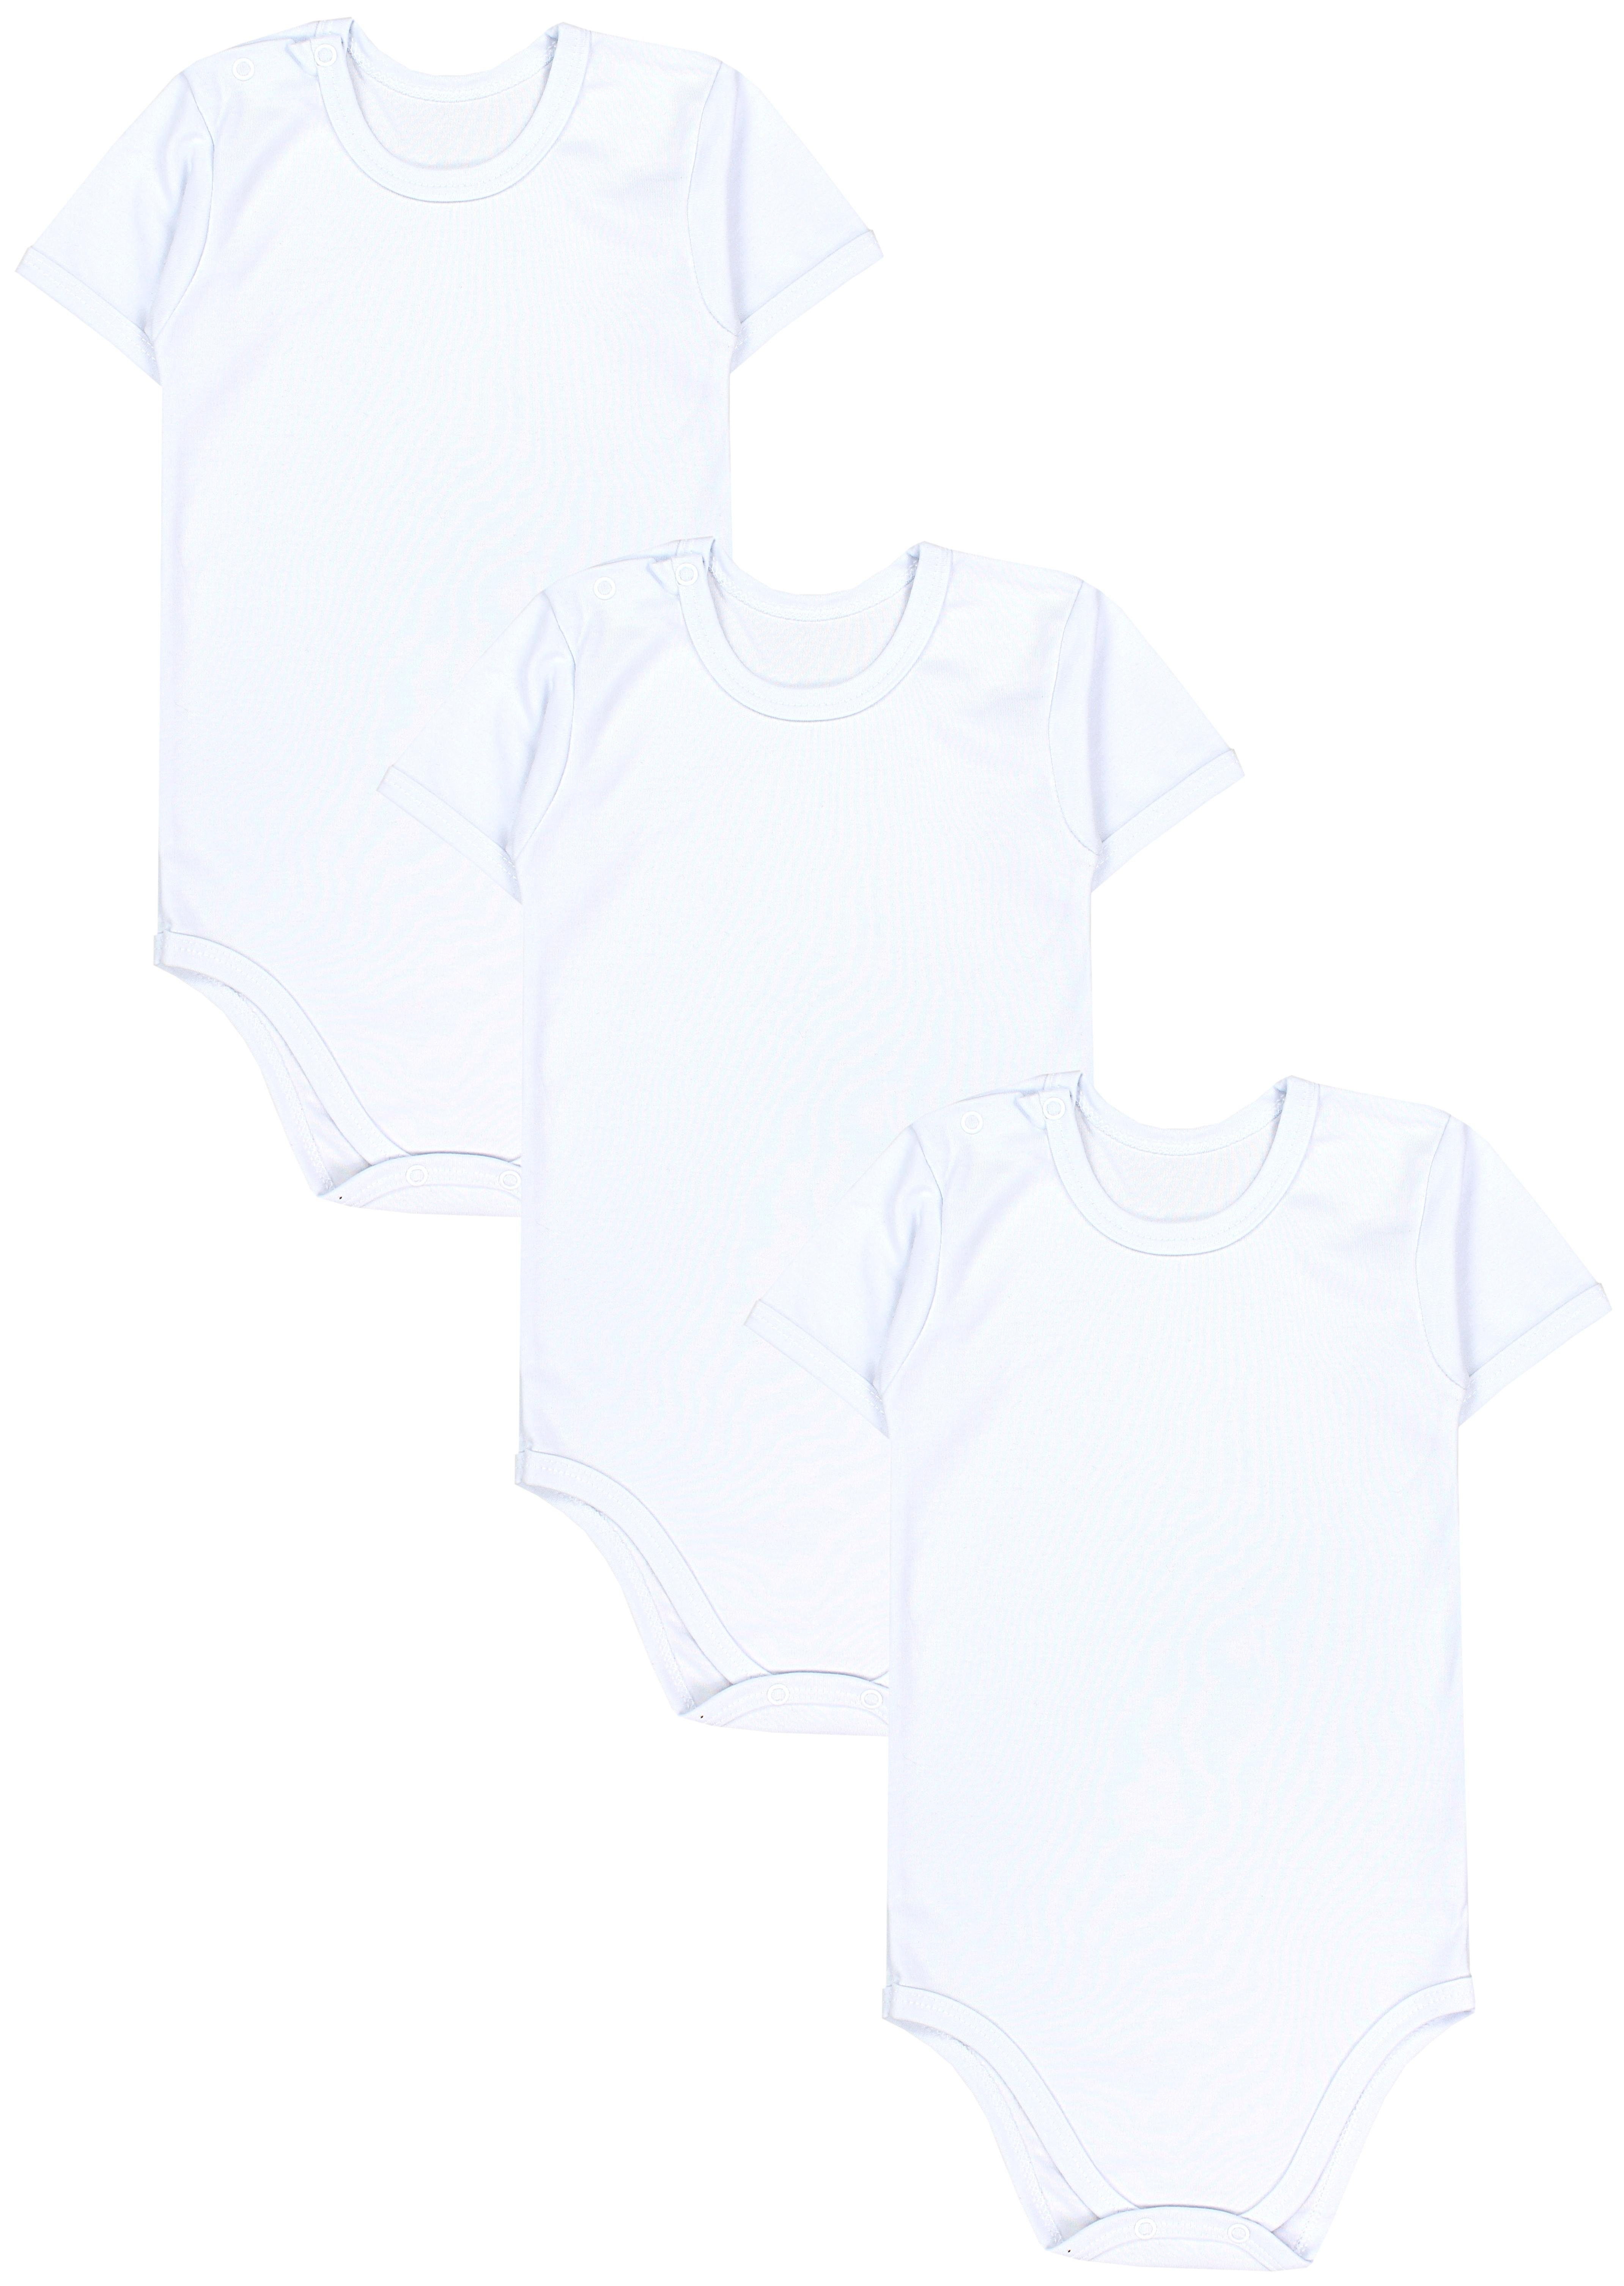 TupTam Kurzarmbody TupTam Kinder Unisex Kurzarm Body Baumwolle 3er Set Weiß | Shirtbodies